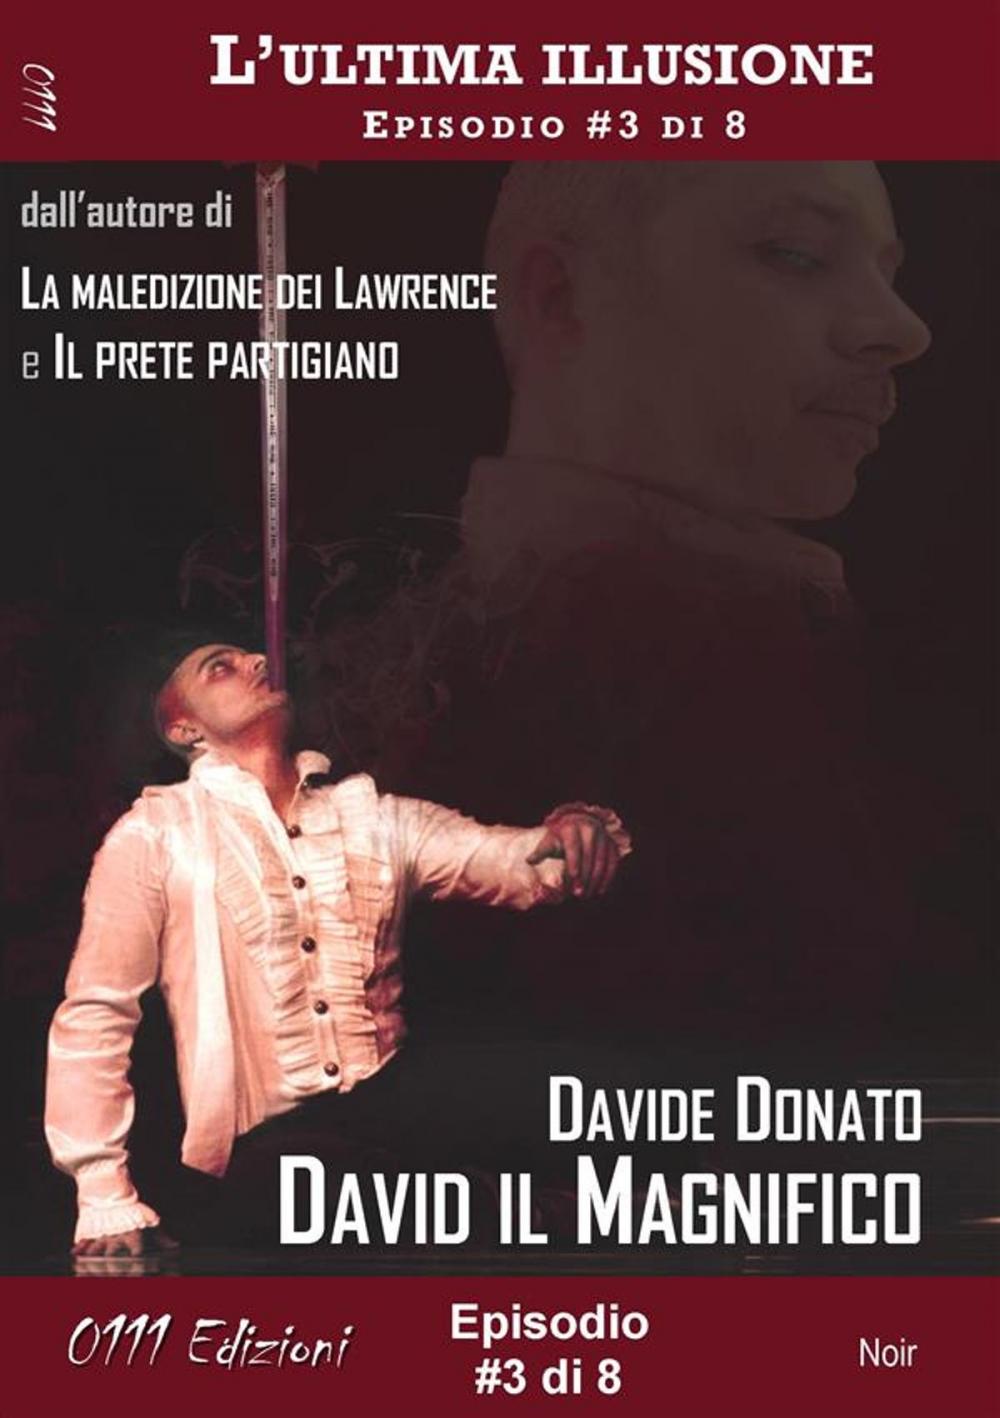 Big bigCover of David il Magnifico - L'ultima illusione ep. #3 di 8